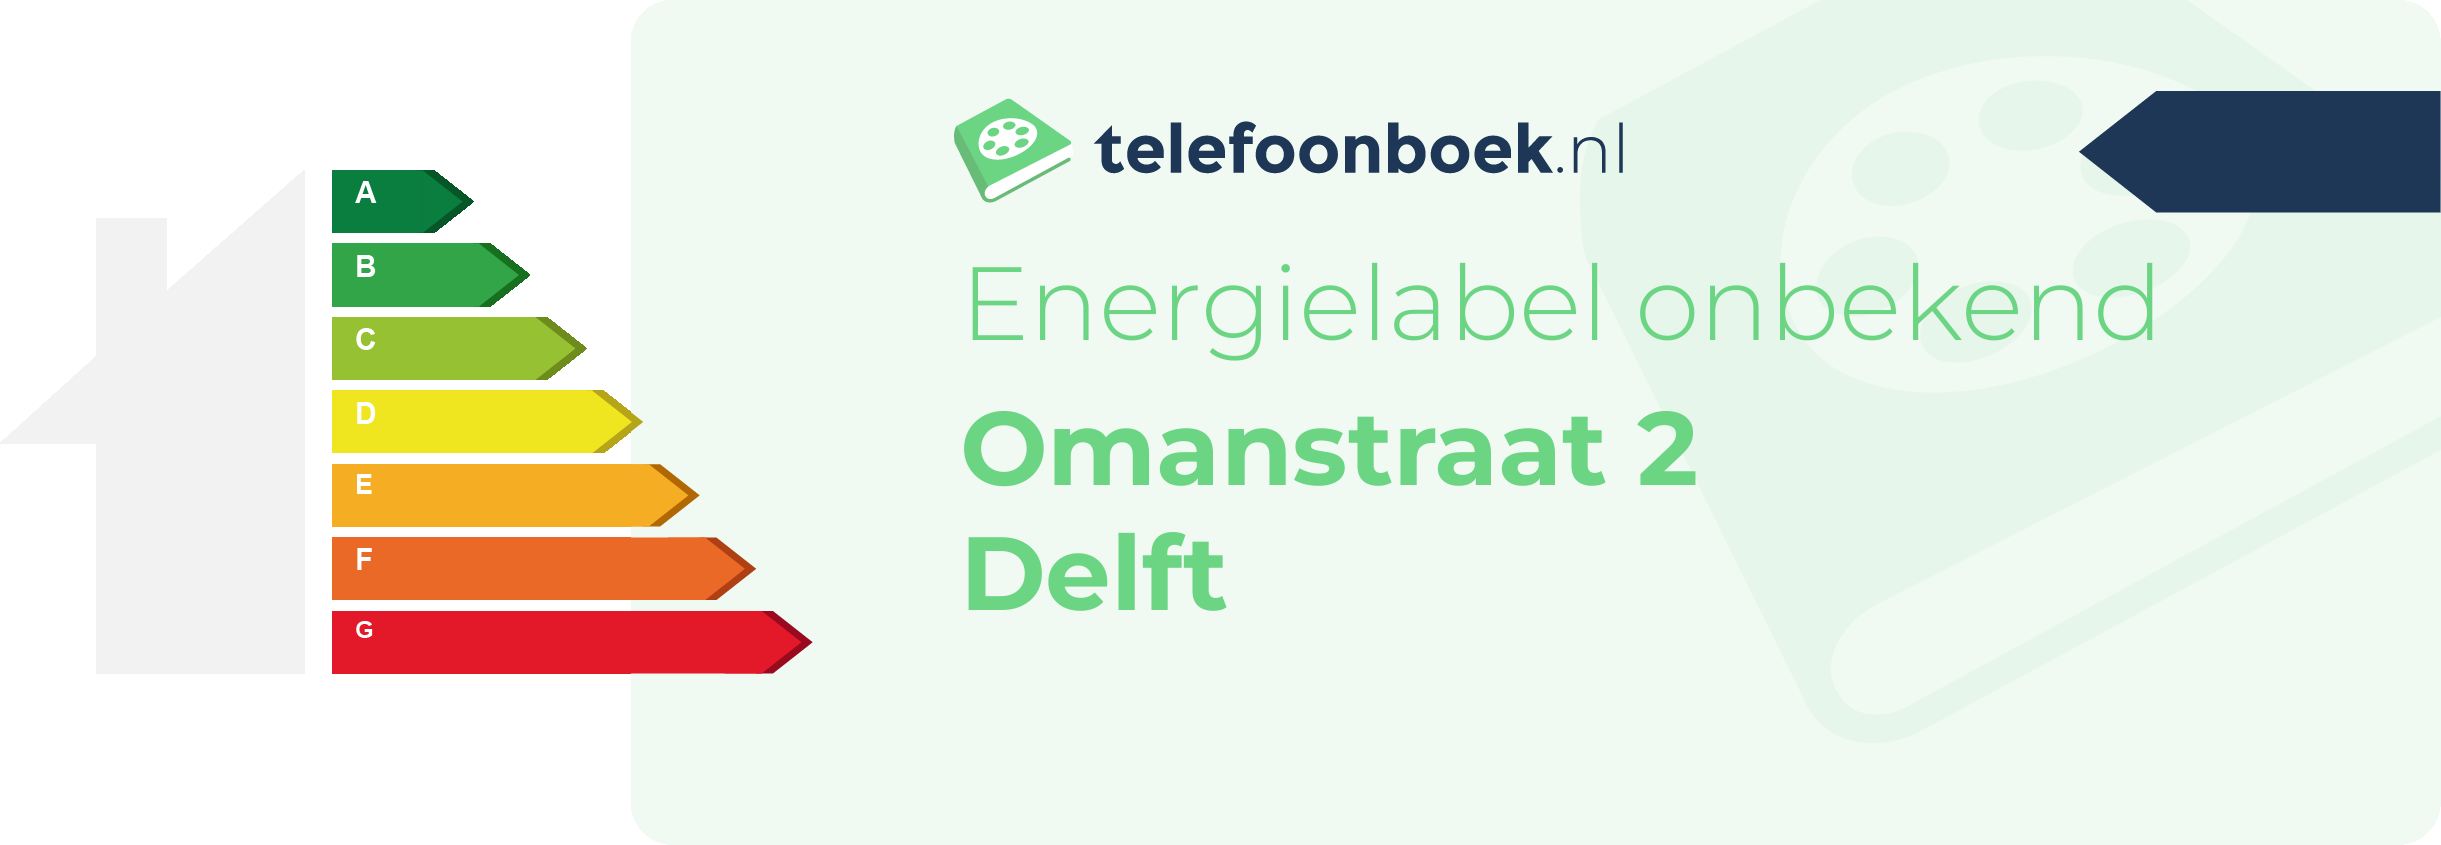 Energielabel Omanstraat 2 Delft